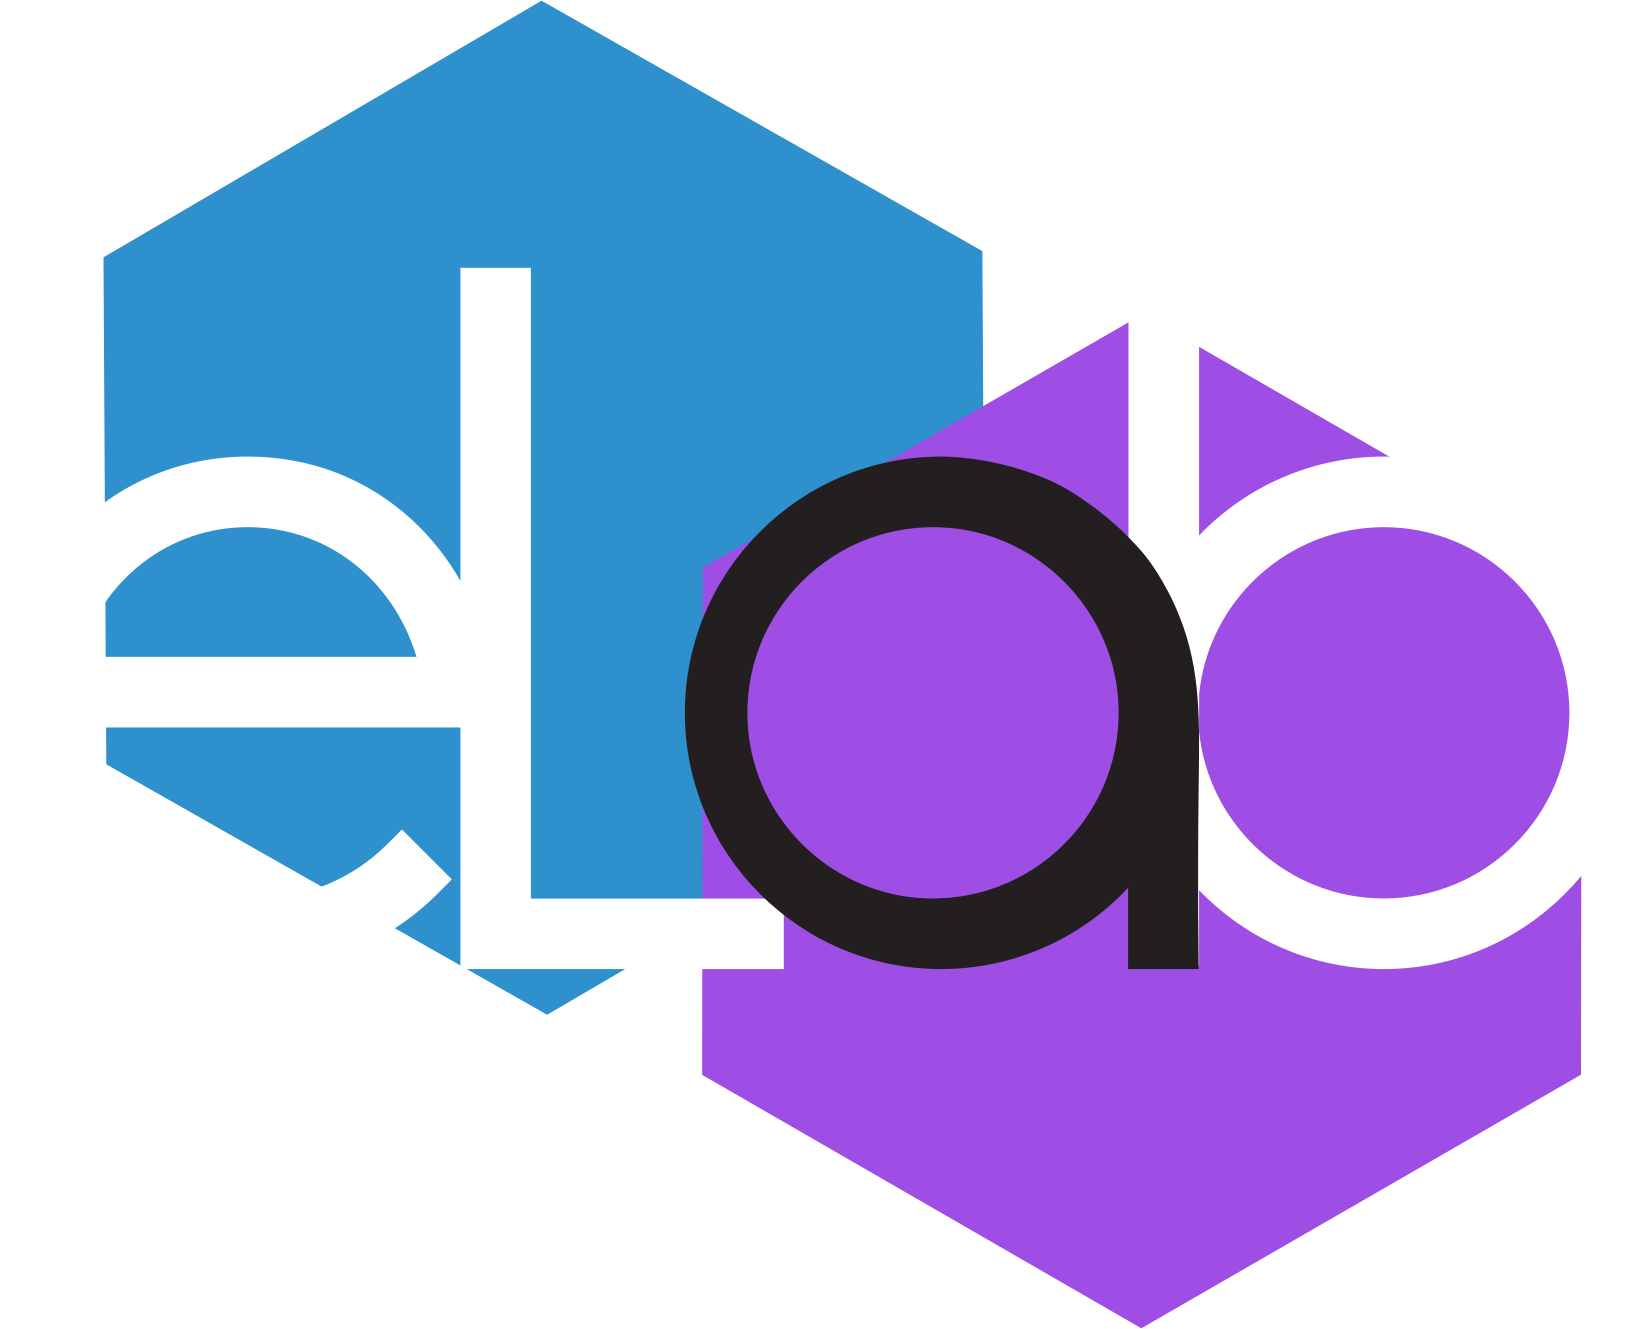 eLab logo